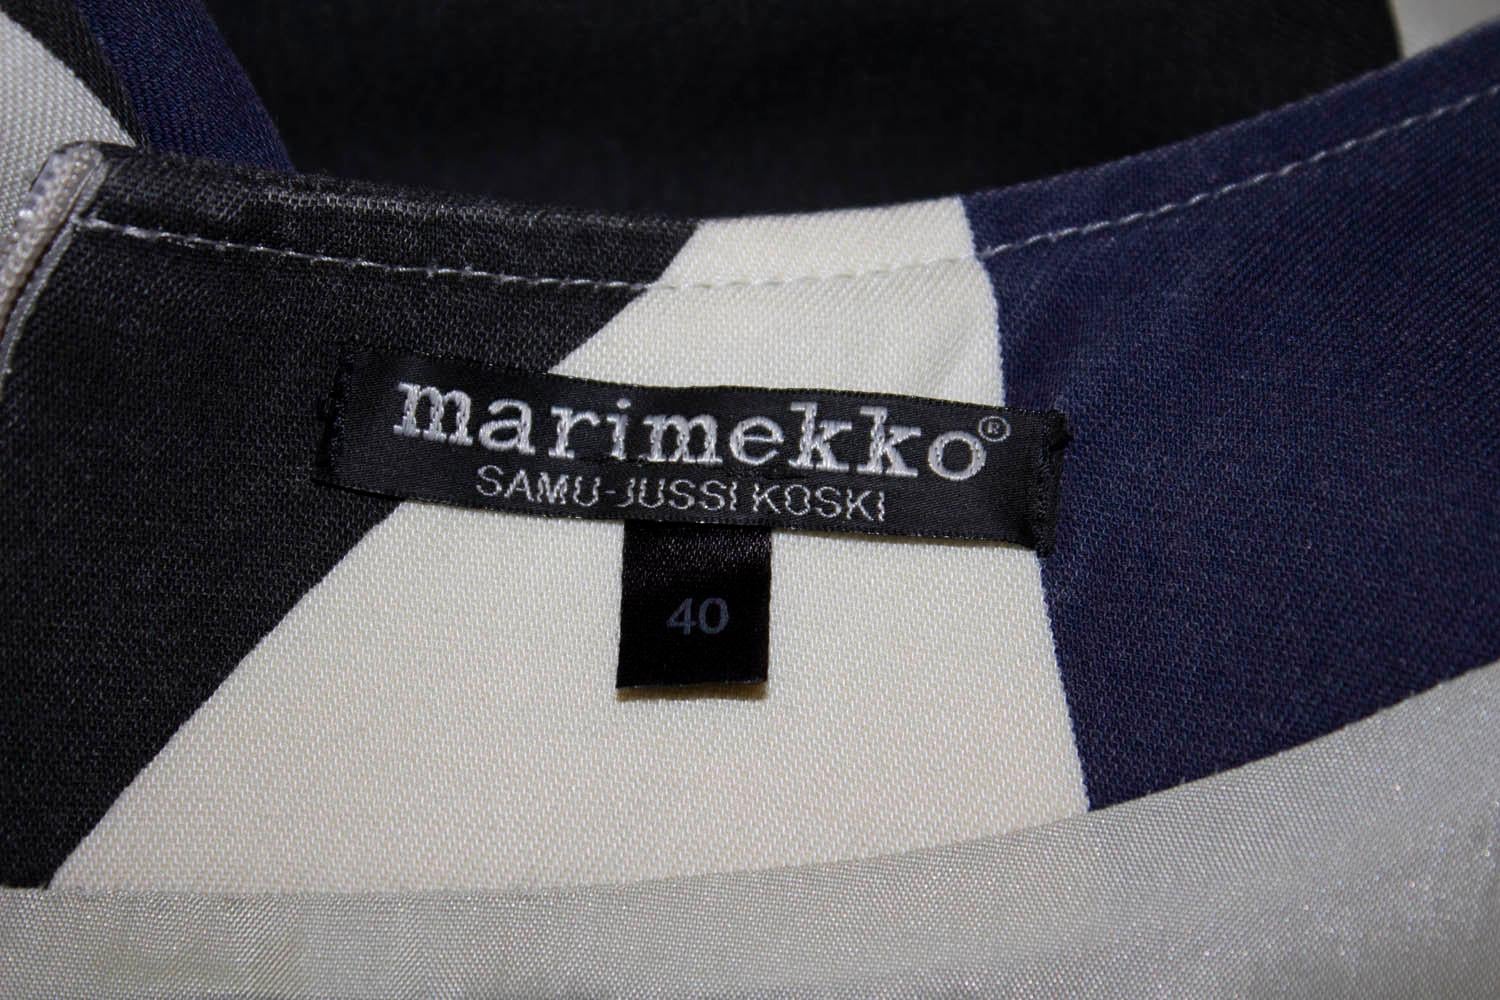 Black Vintage Marimekko Dress and Jacket For Sale